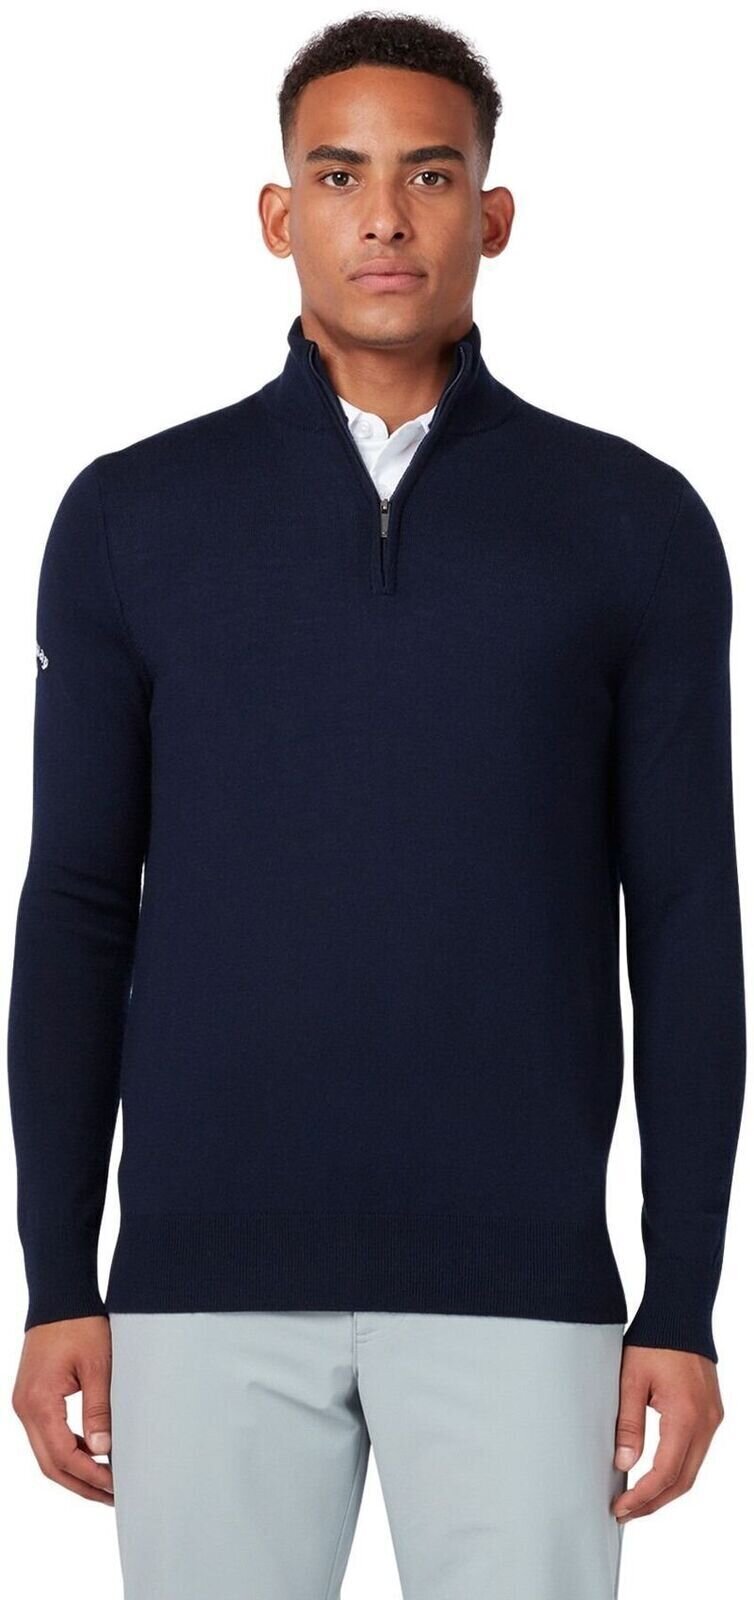 Hoodie/Sweater Callaway 1/4 Zipped Mens Merino Sweater Dark Navy XL